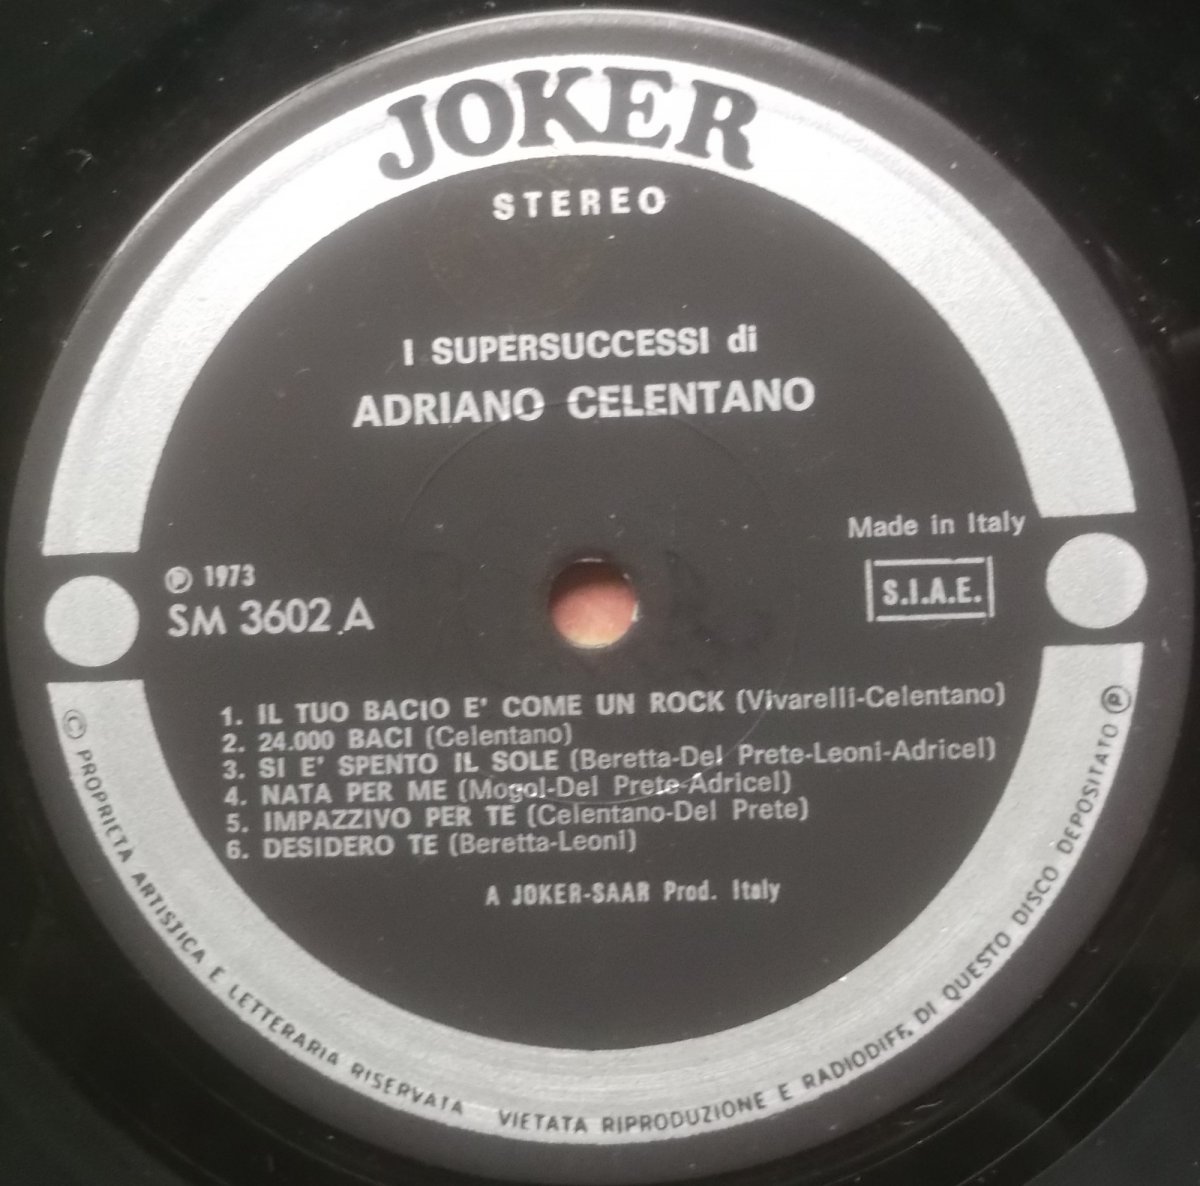 Adriano Celentano – 12 Supersuccessi